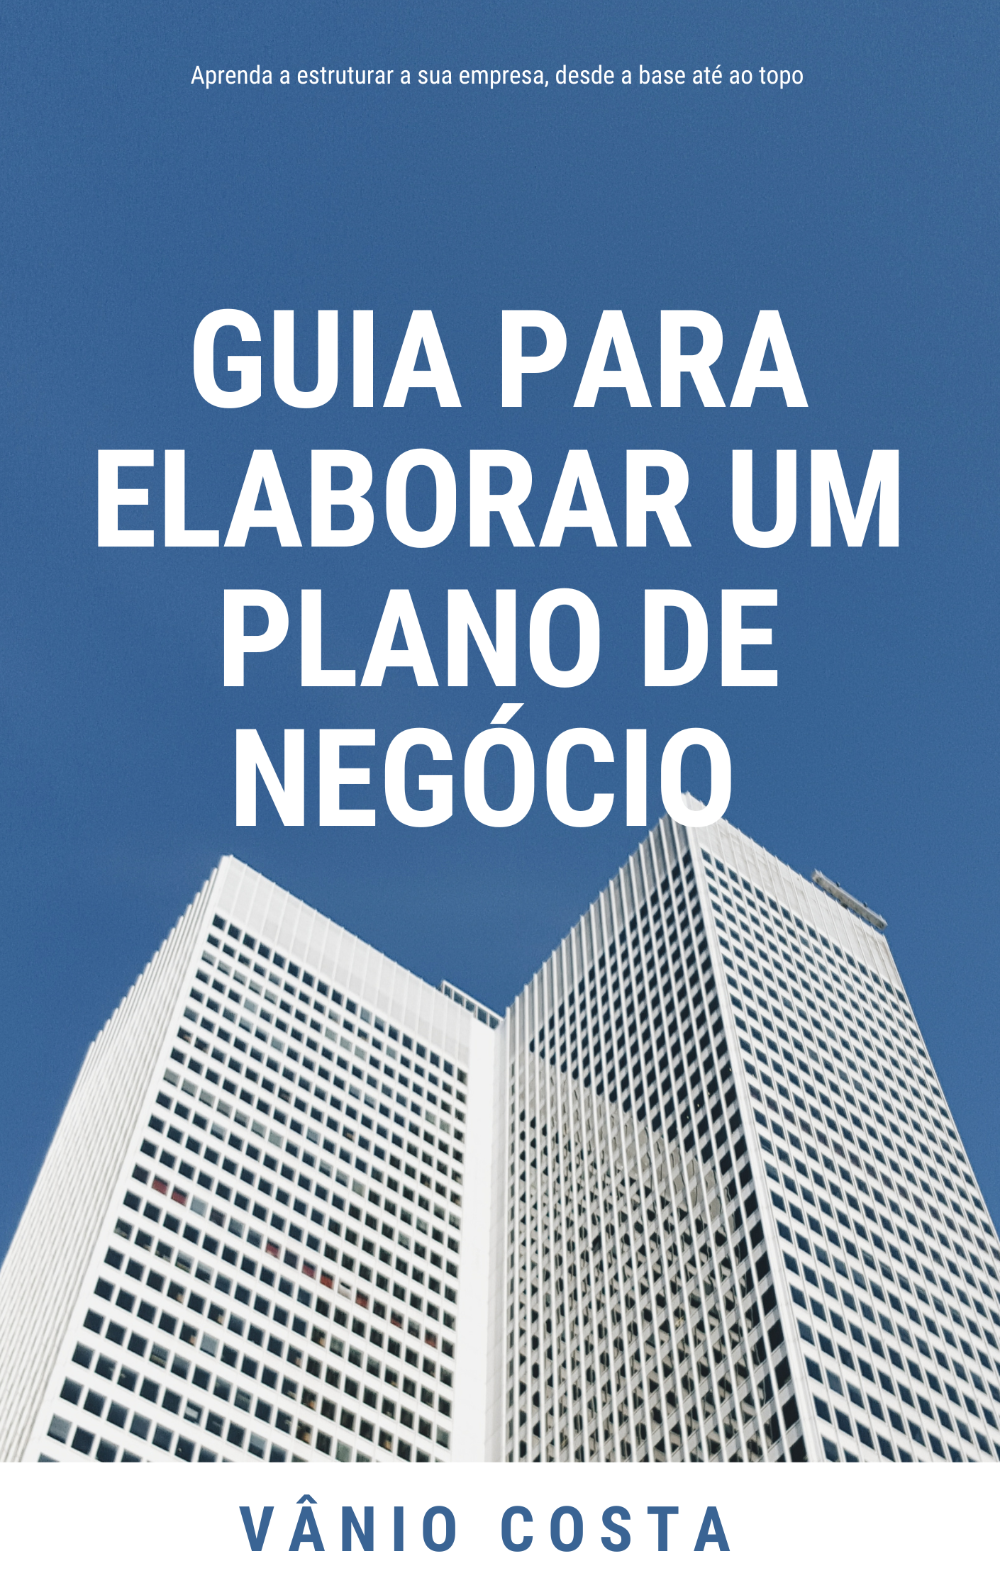 guia_para_elaborar_um_plano_de_negocio__489